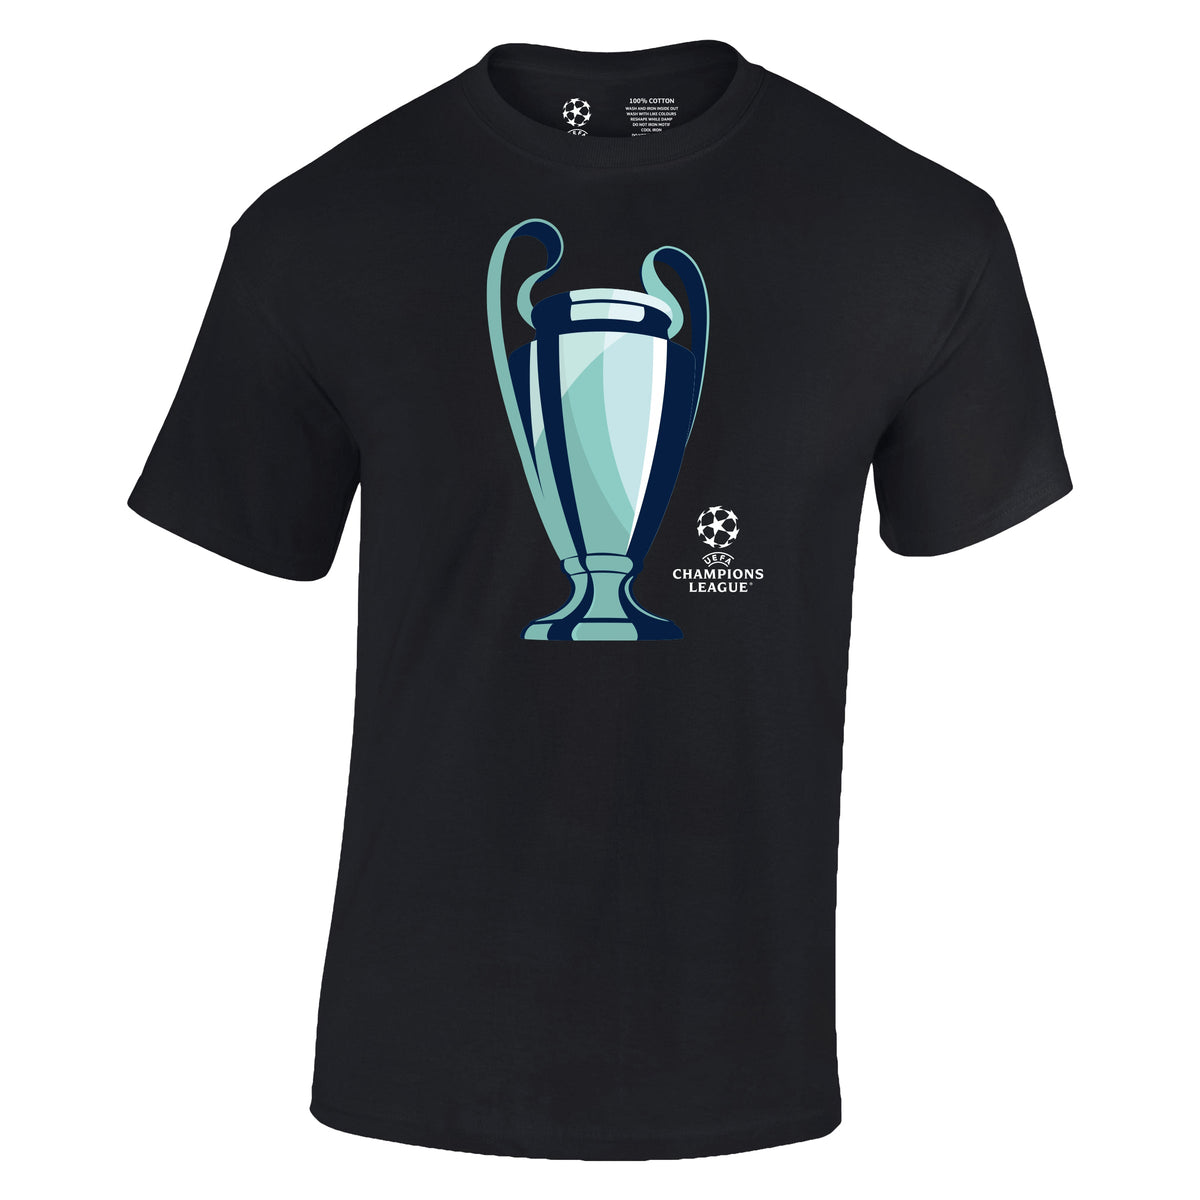 Champions League Trophy T-Shirt Black